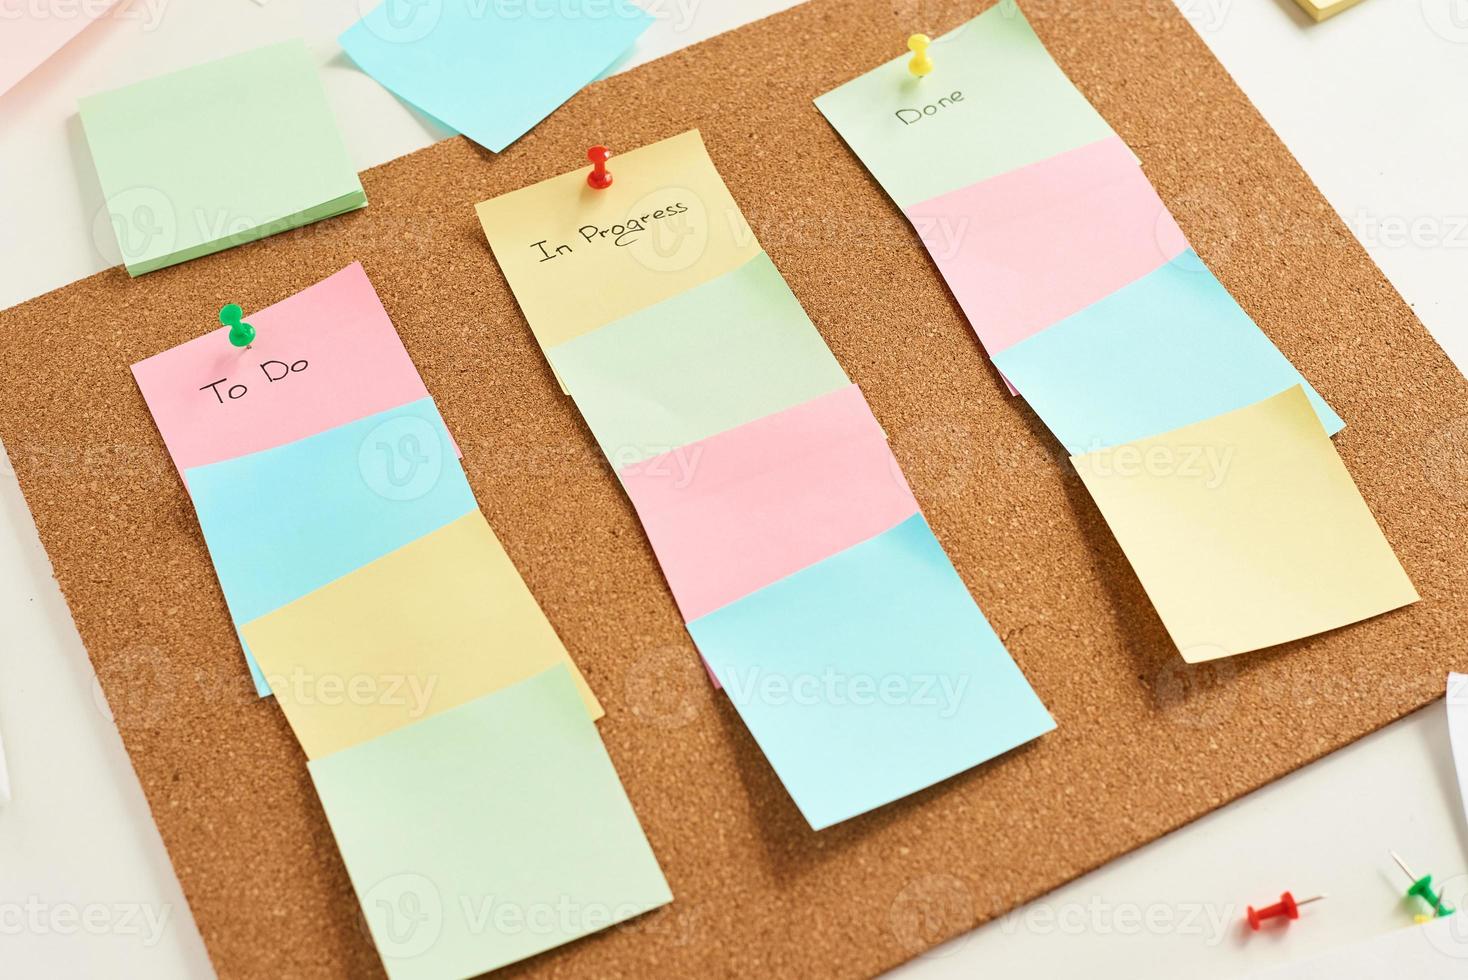 notas de papel coloridas com palavras para fazer, em andamento e feitas fixadas em uma placa de cortiça foto